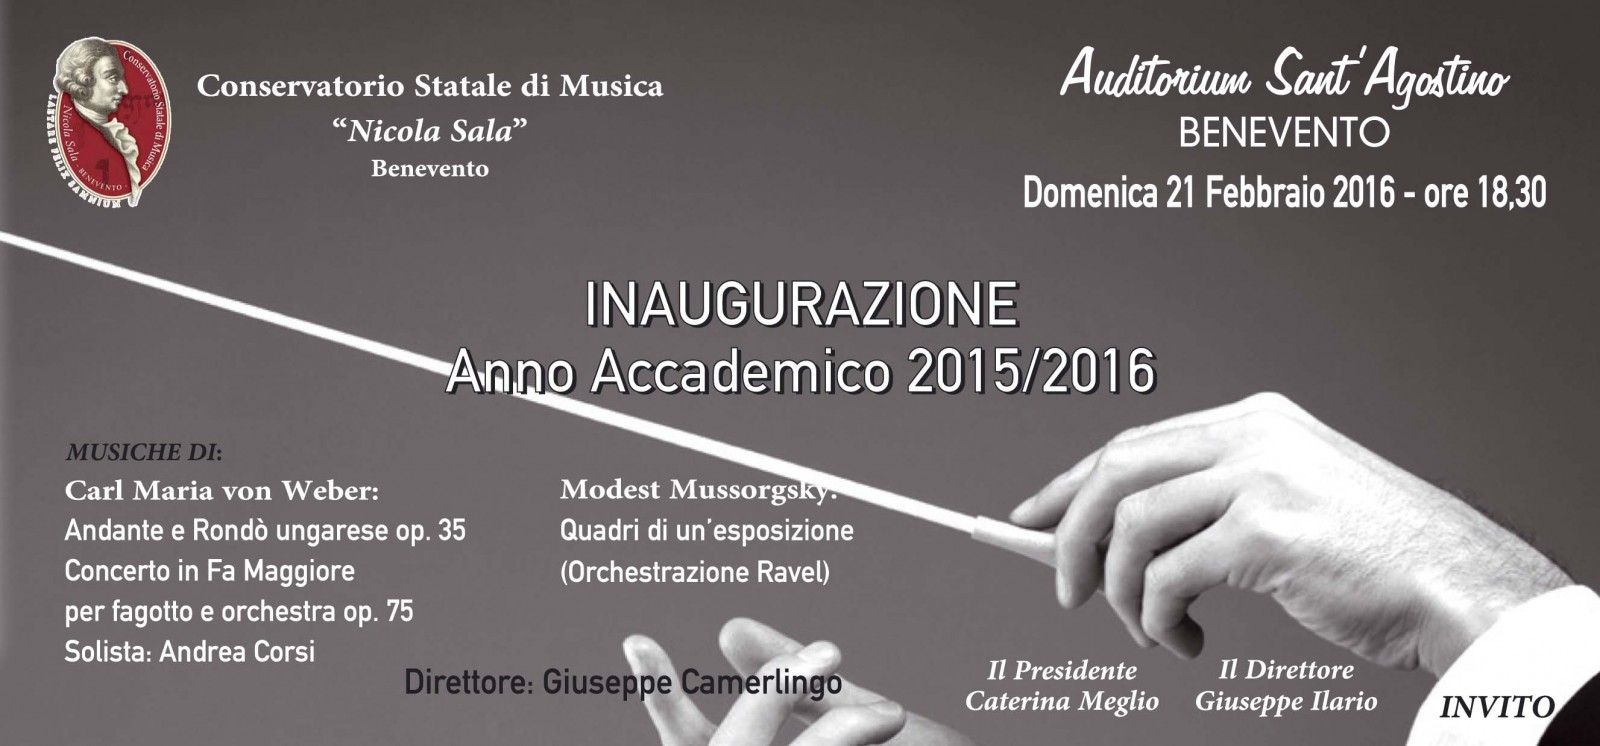 Conservatorio “Nicola Sala”: si inaugura l’Anno Accademico 2015/2016